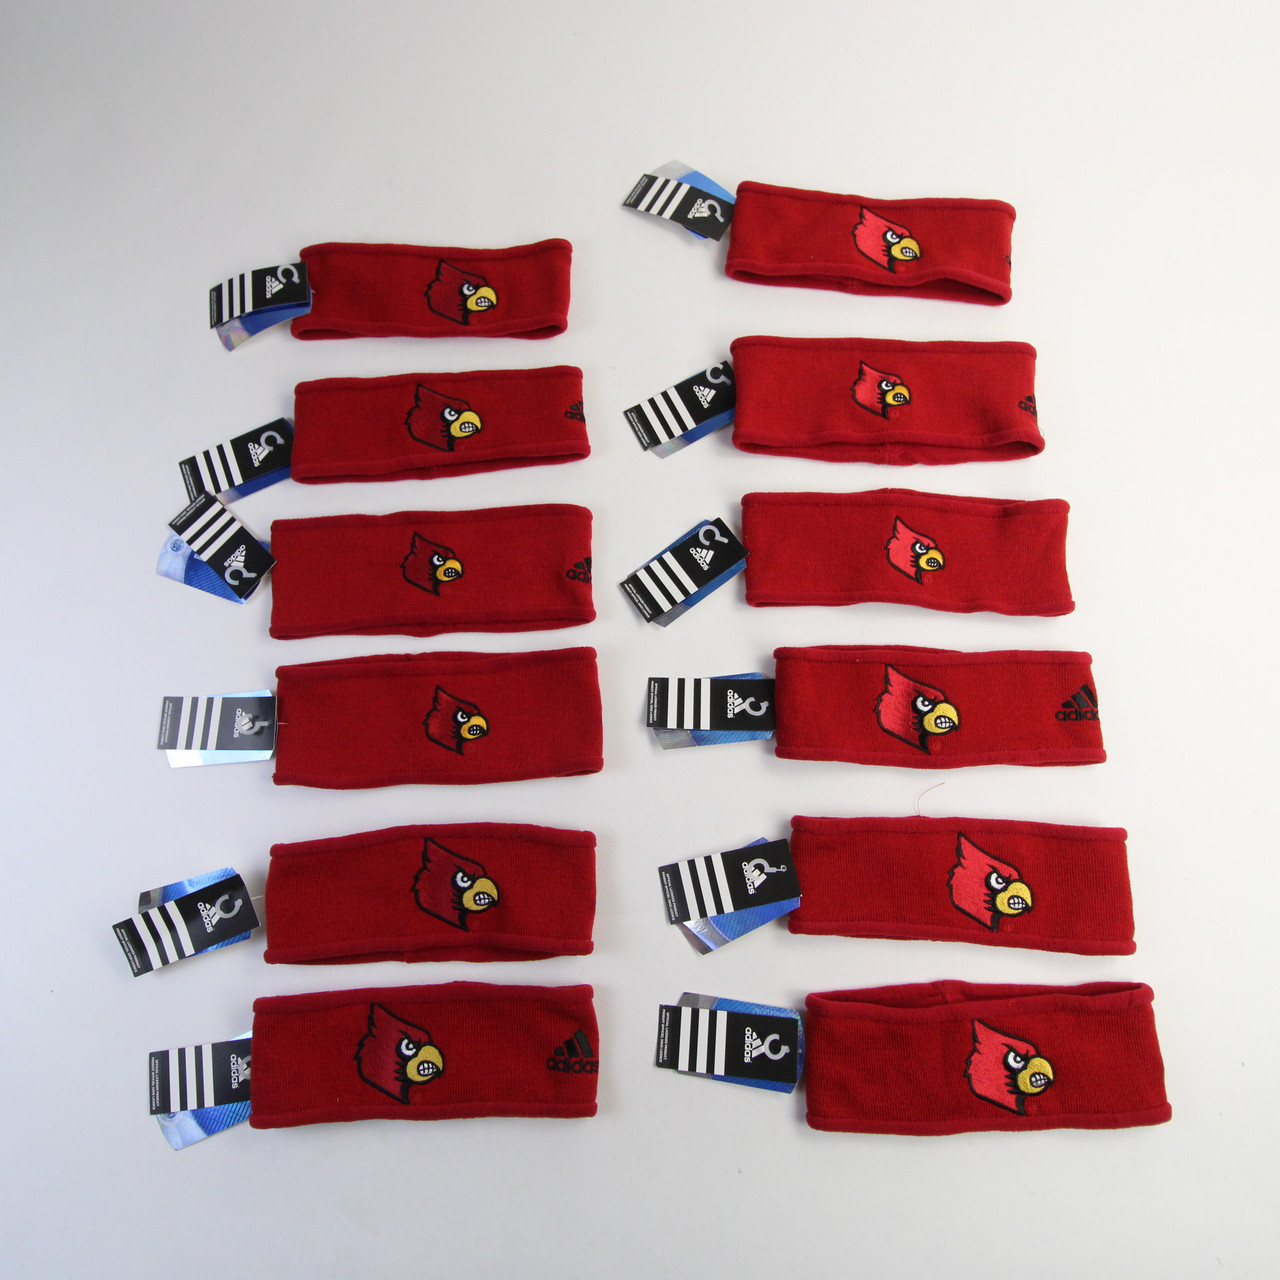 Louisville Cardinals Headbands